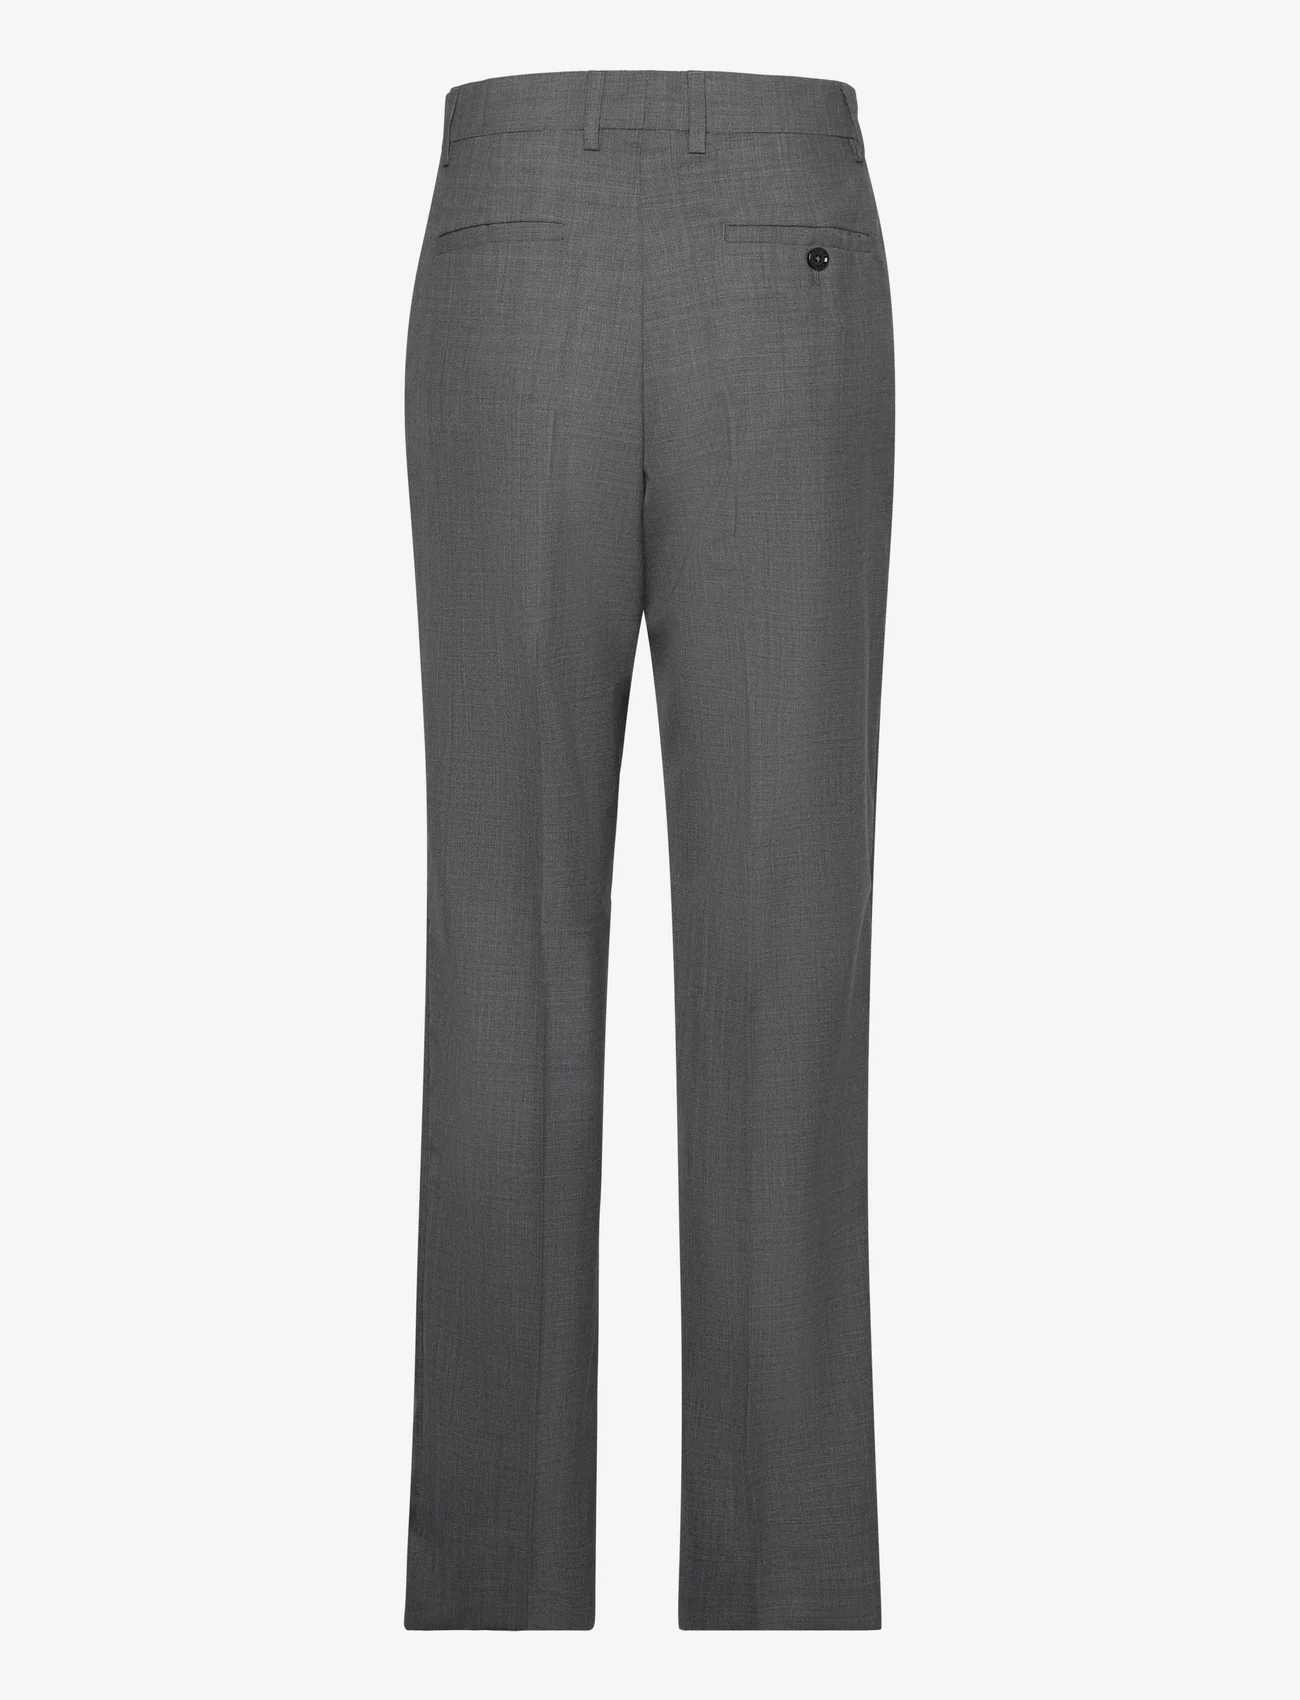 Hope - Straight-leg Suit Trousers - dressbukser - grey melange - 1